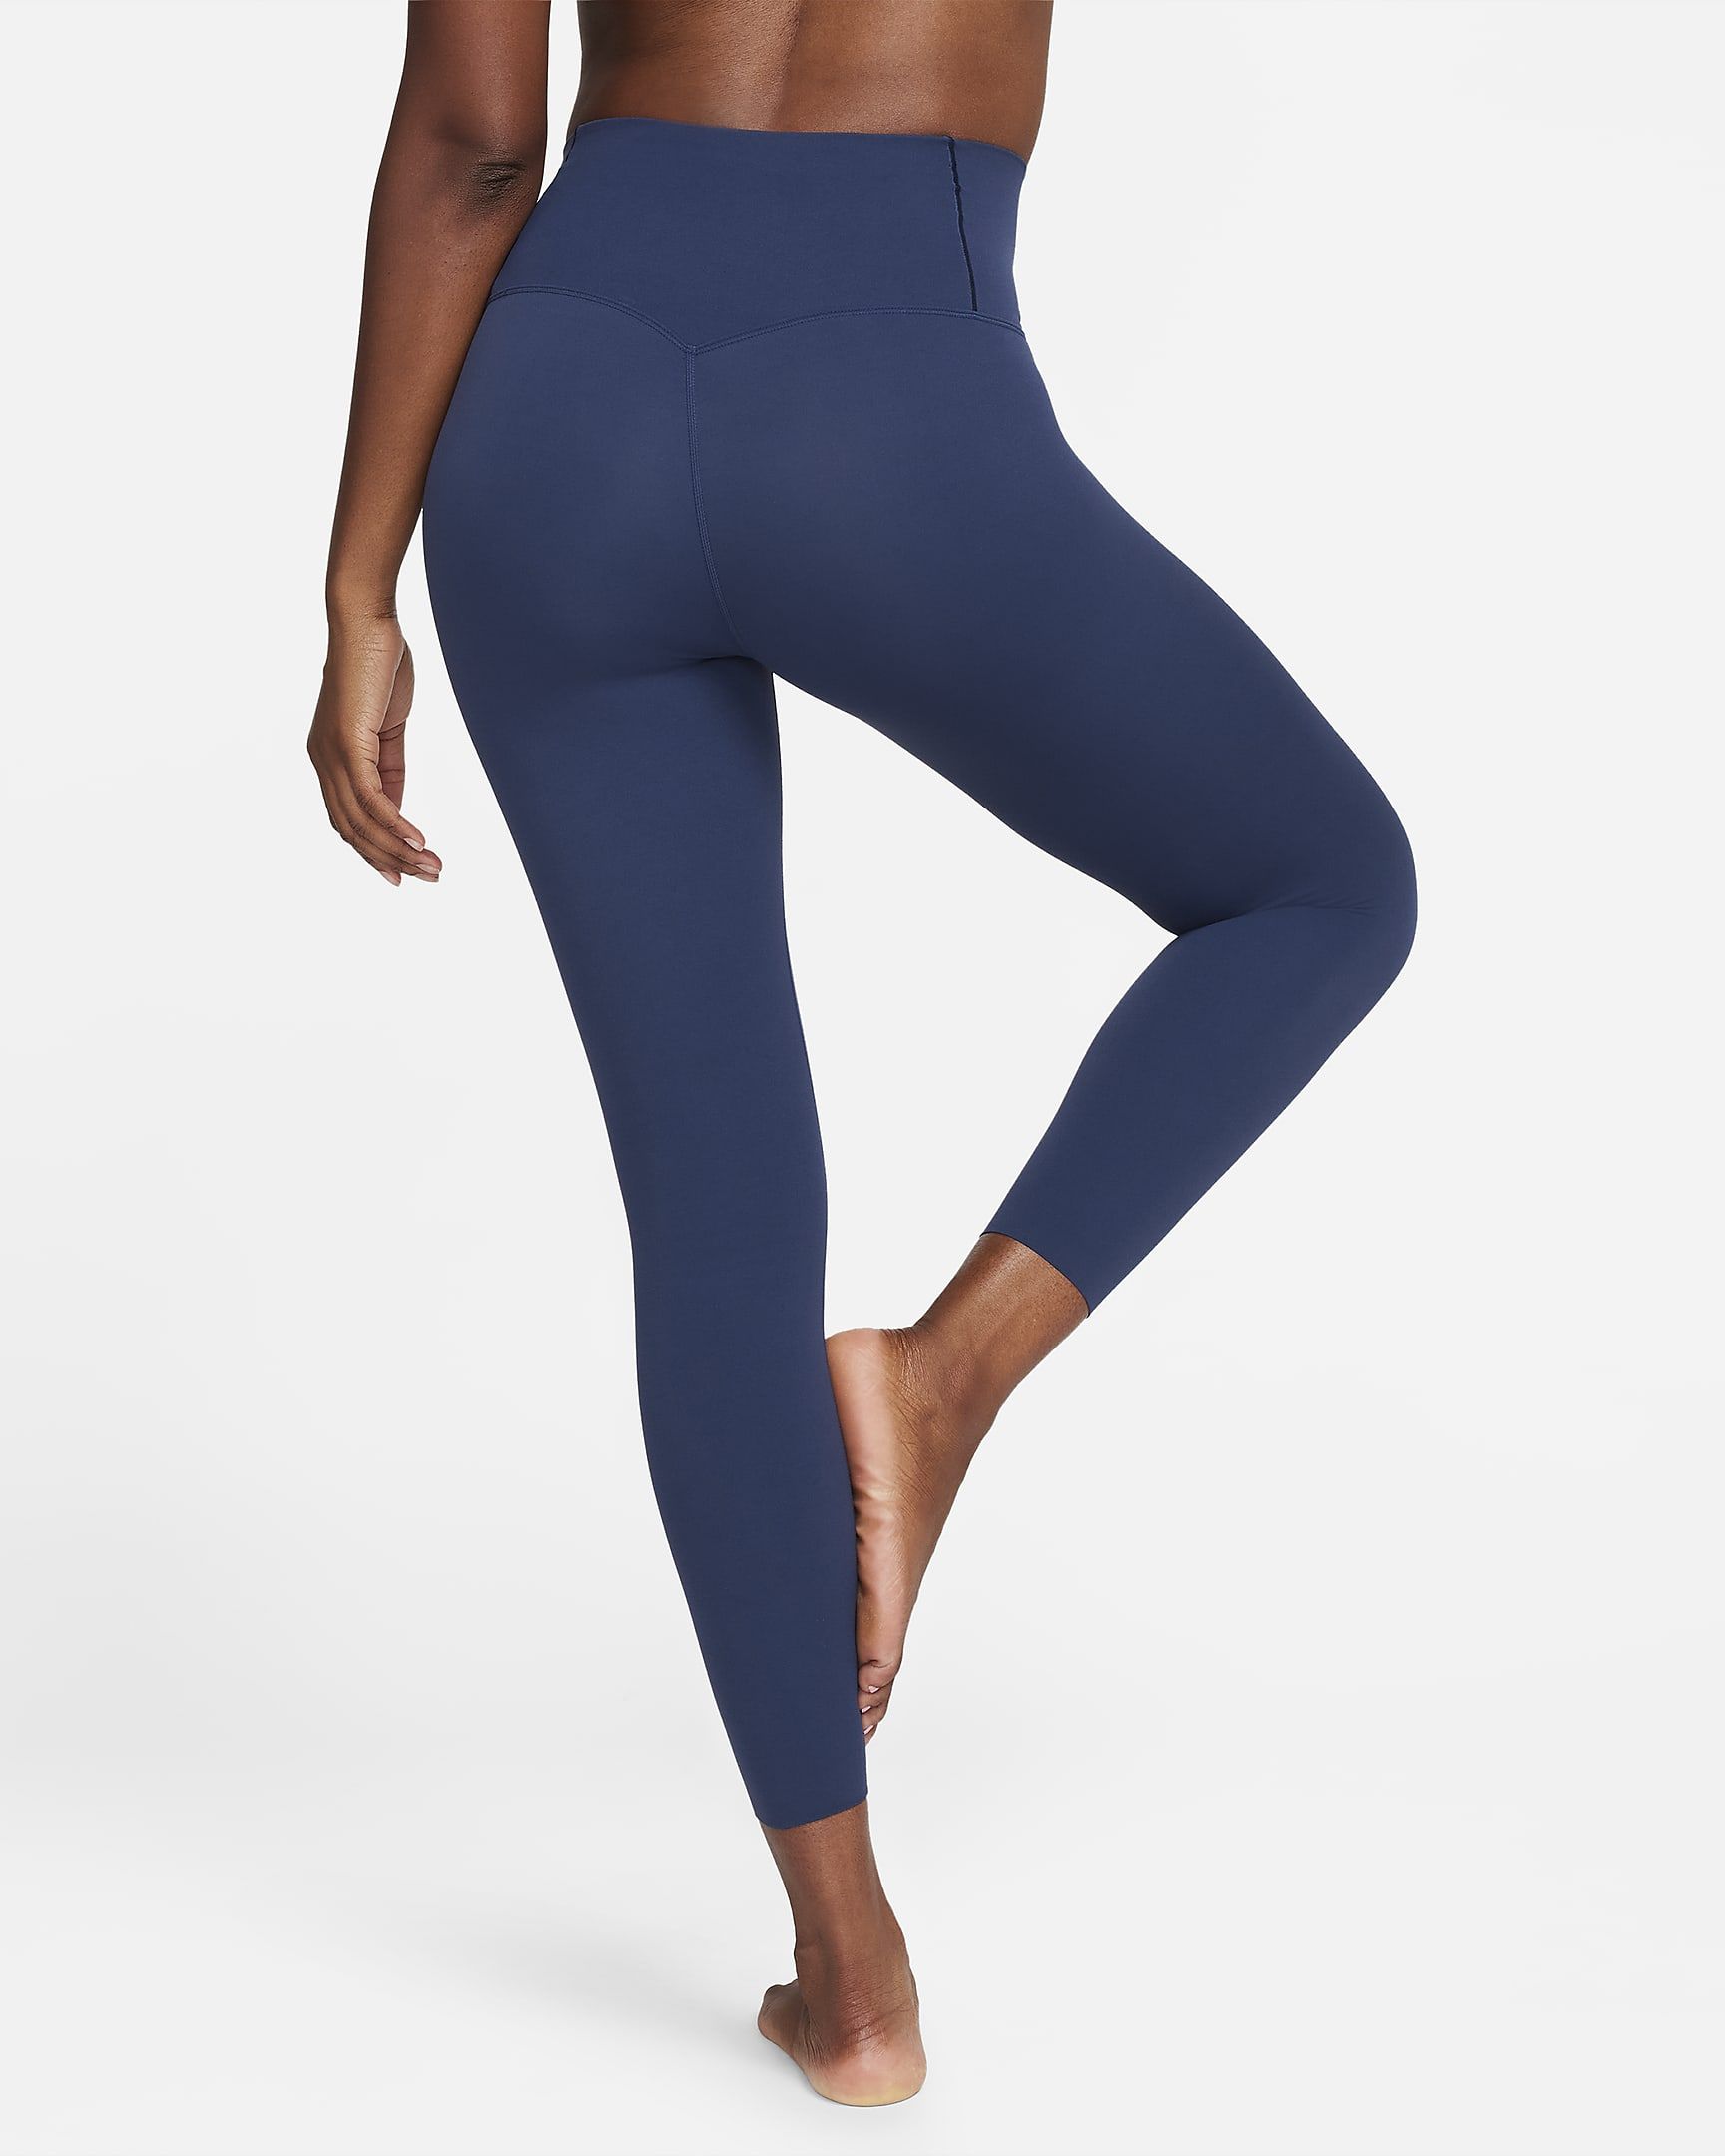 Nike ZenvyWomen's Gentle-Support High-Waisted 7/8 Leggings$100 | Nike (US)